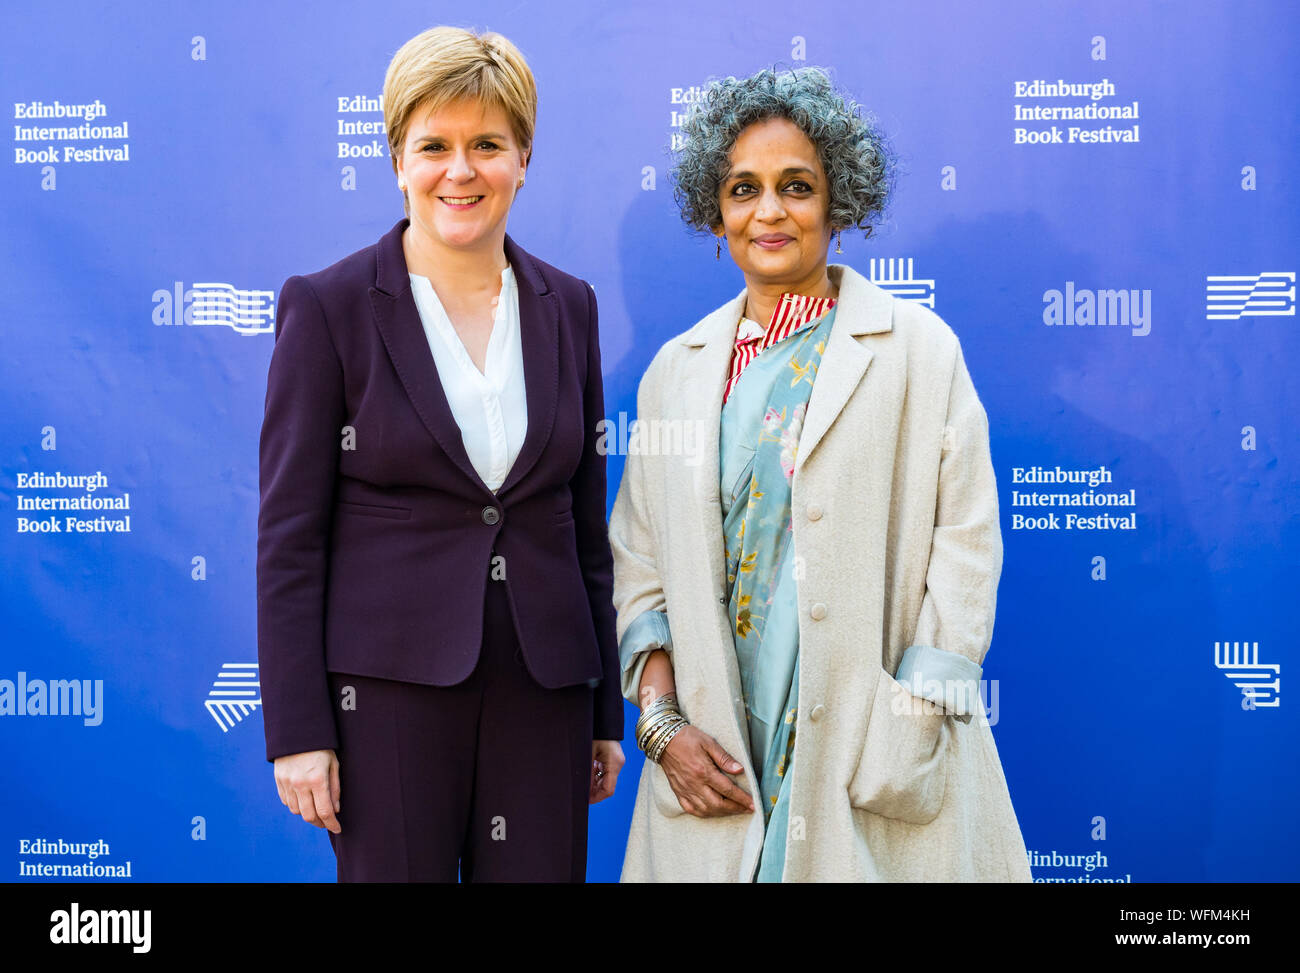 Nicola Sturgeon, Premier Ministre indien & auteur & Booker prize winner Arundhati Roy, Edinburgh International Book Festival 2019, Écosse, Royaume-Uni Banque D'Images